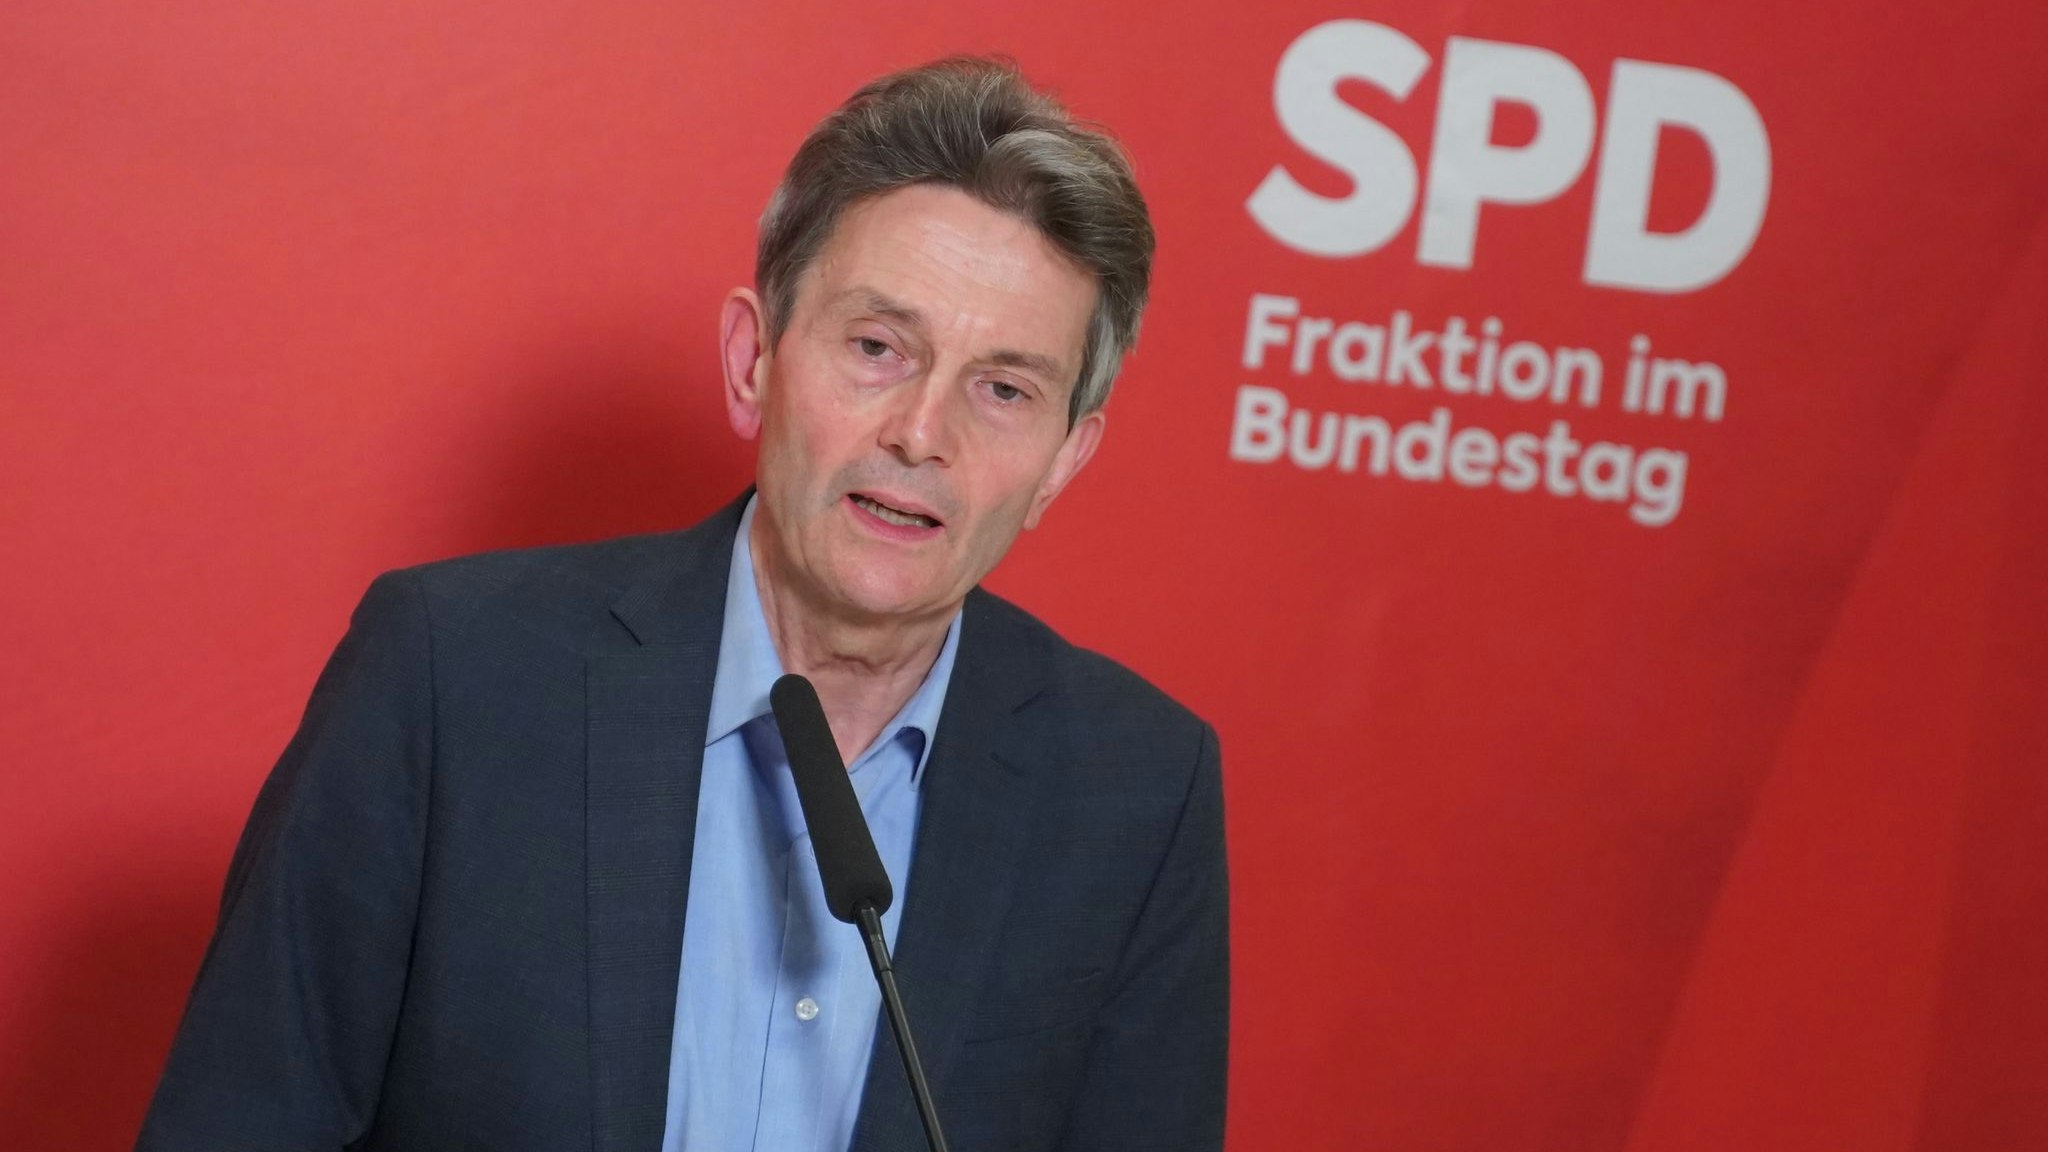 Vor Beginn der Koalitionsgespräche betont SPD-Politiker Rolf Mützenich: Die 3 Partner begegneten sich bei den inhaltlichen Diskussionen auf Augenhöhe – gleichwohl sei die SPD die stärkste Kraft. dpa/Carstensen